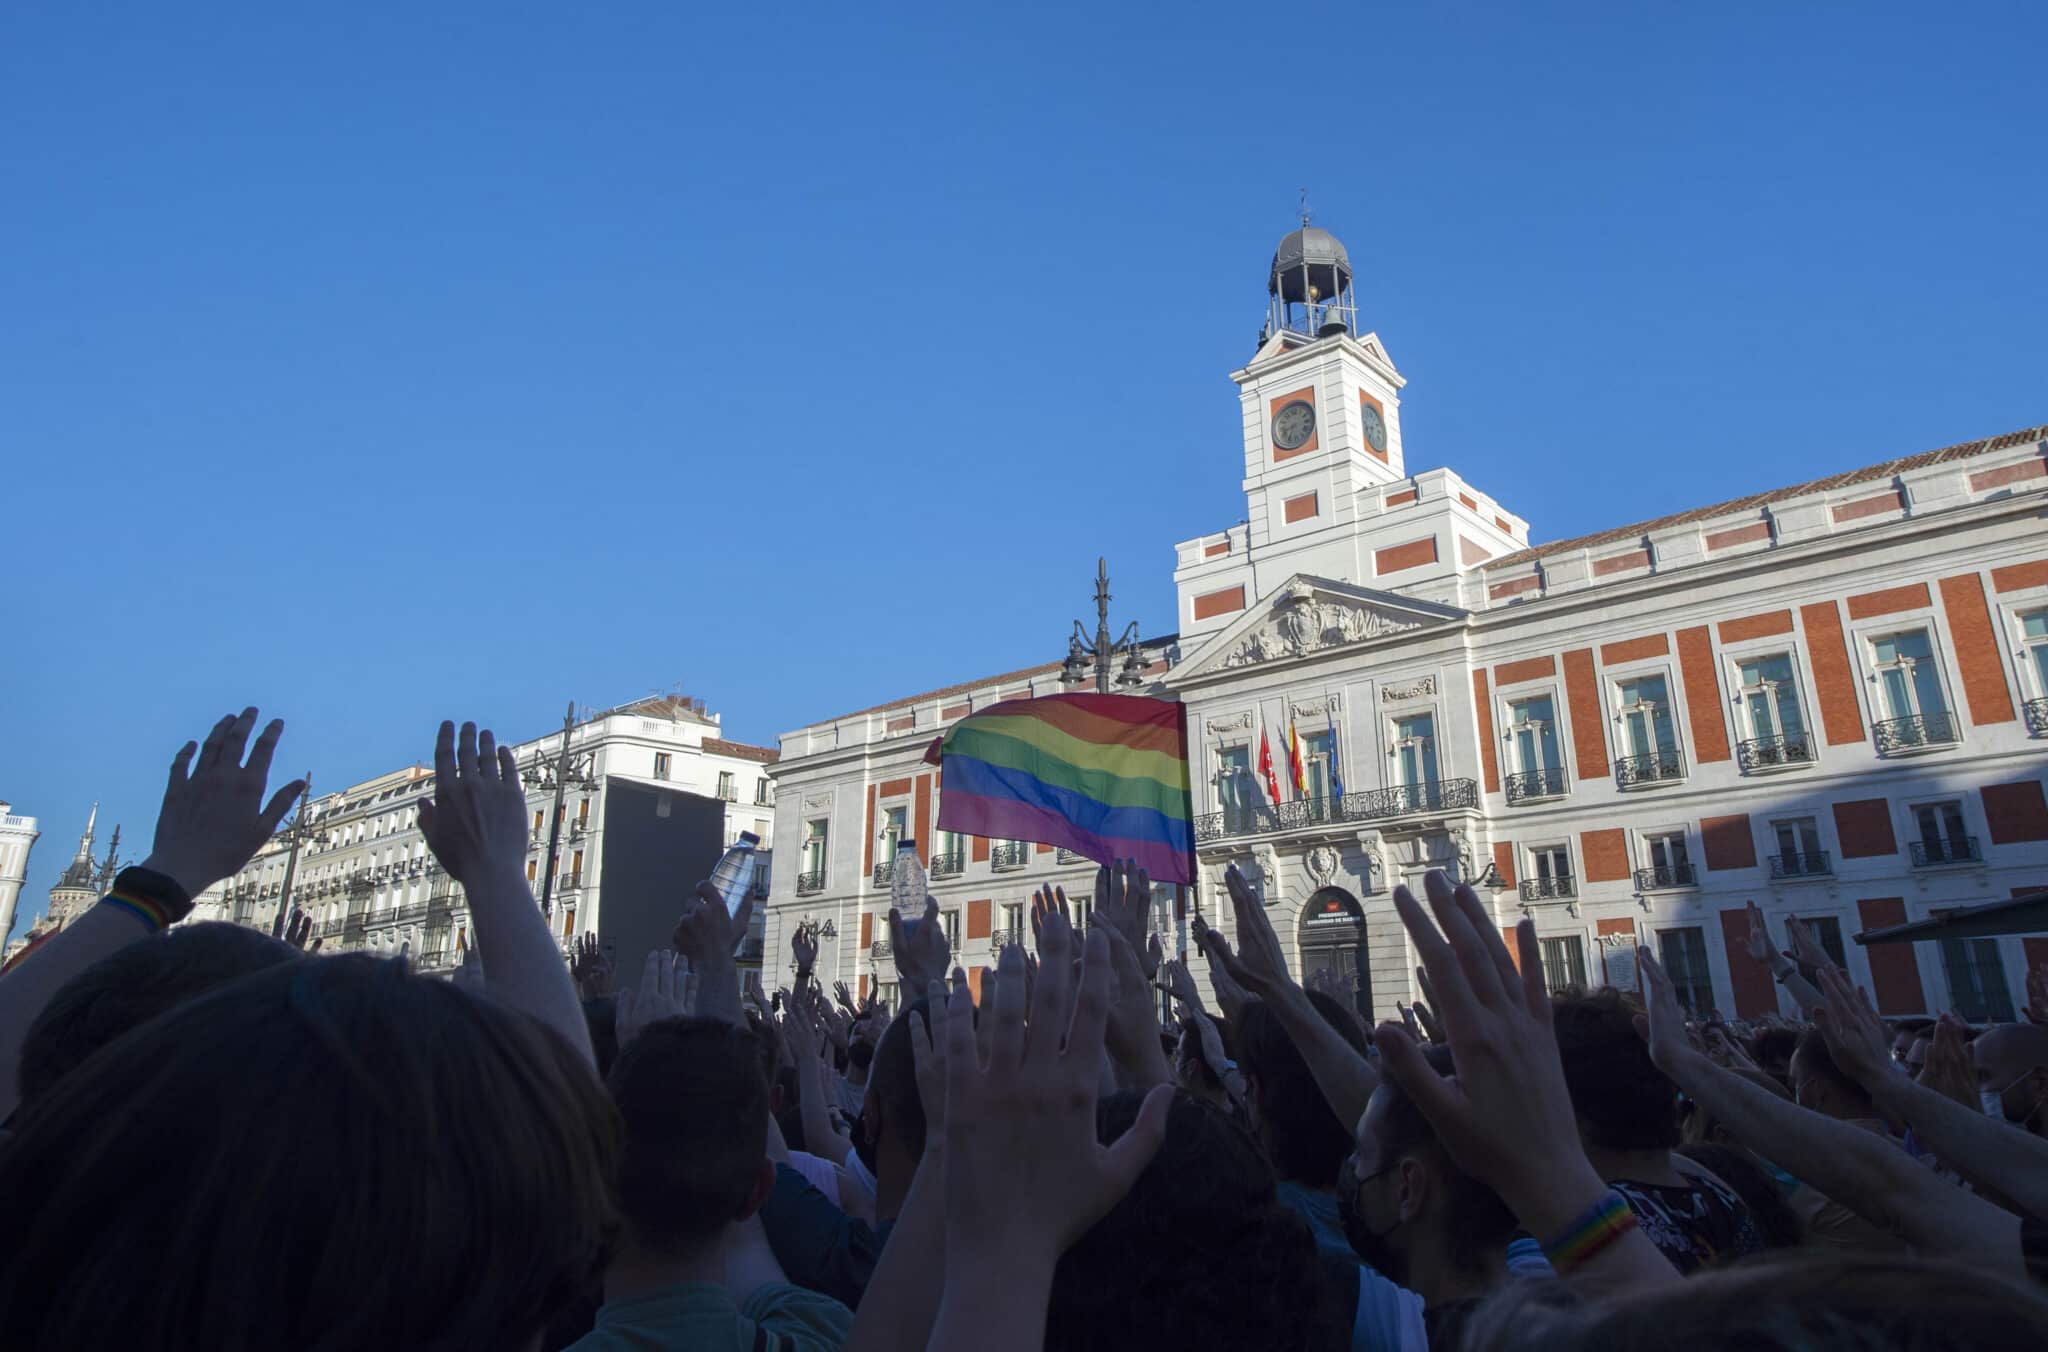 Cientos de personas durante una manifestación para condenar el asesinato de un joven de 24 años el pasado sábado en A Coruña debido a una paliza.